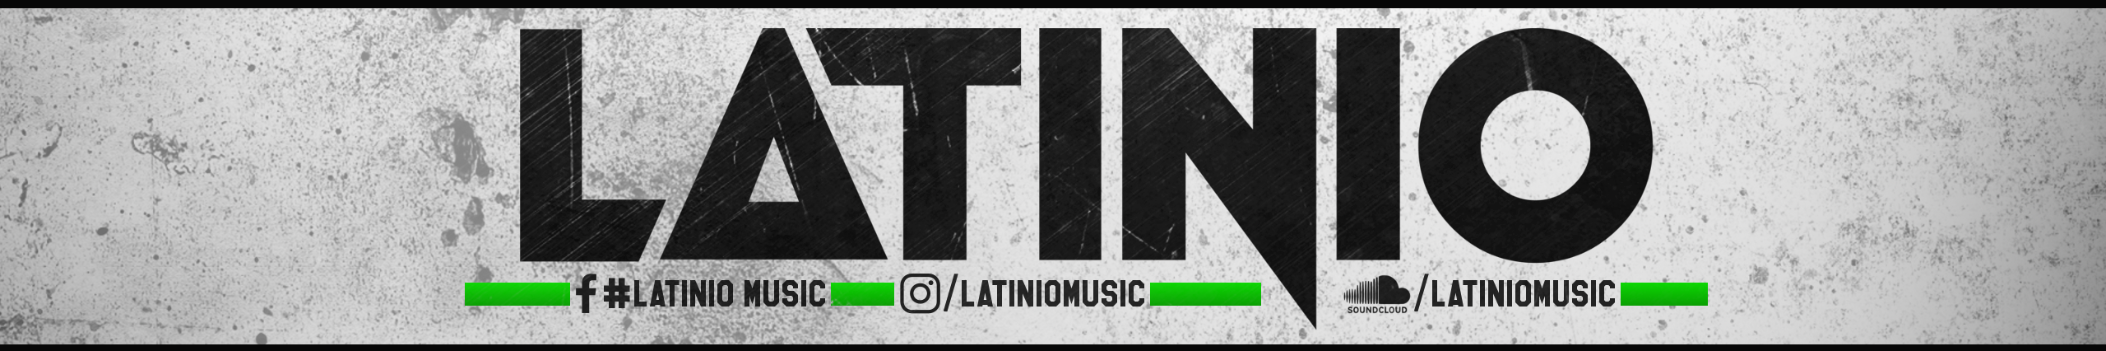 Latinio Music